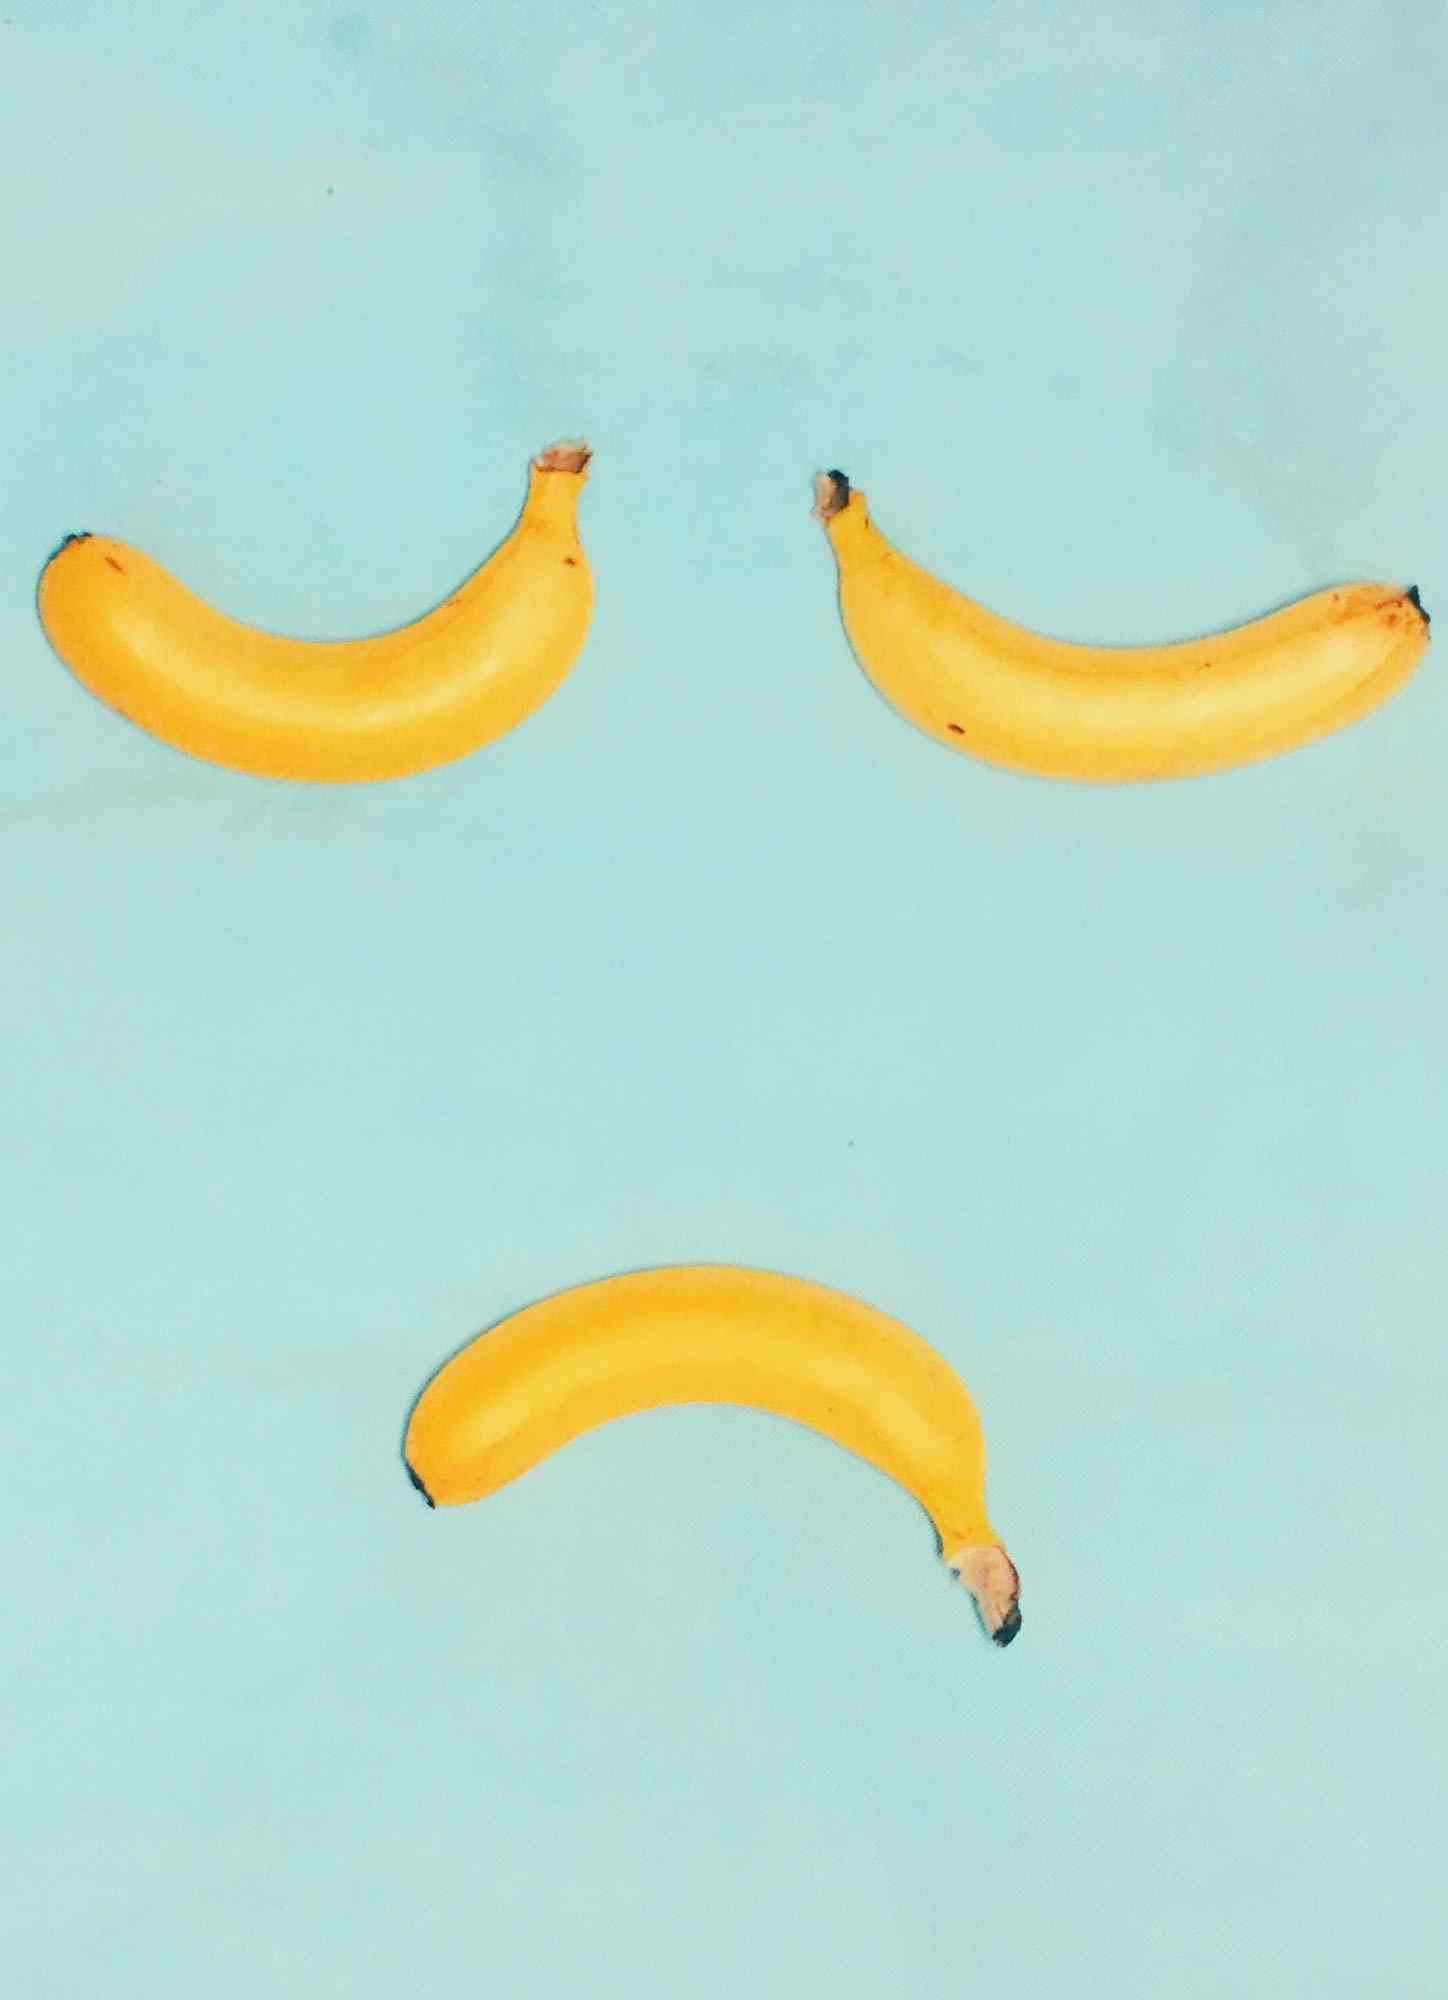 香蕉创意摆拍哭脸造型手机壁纸